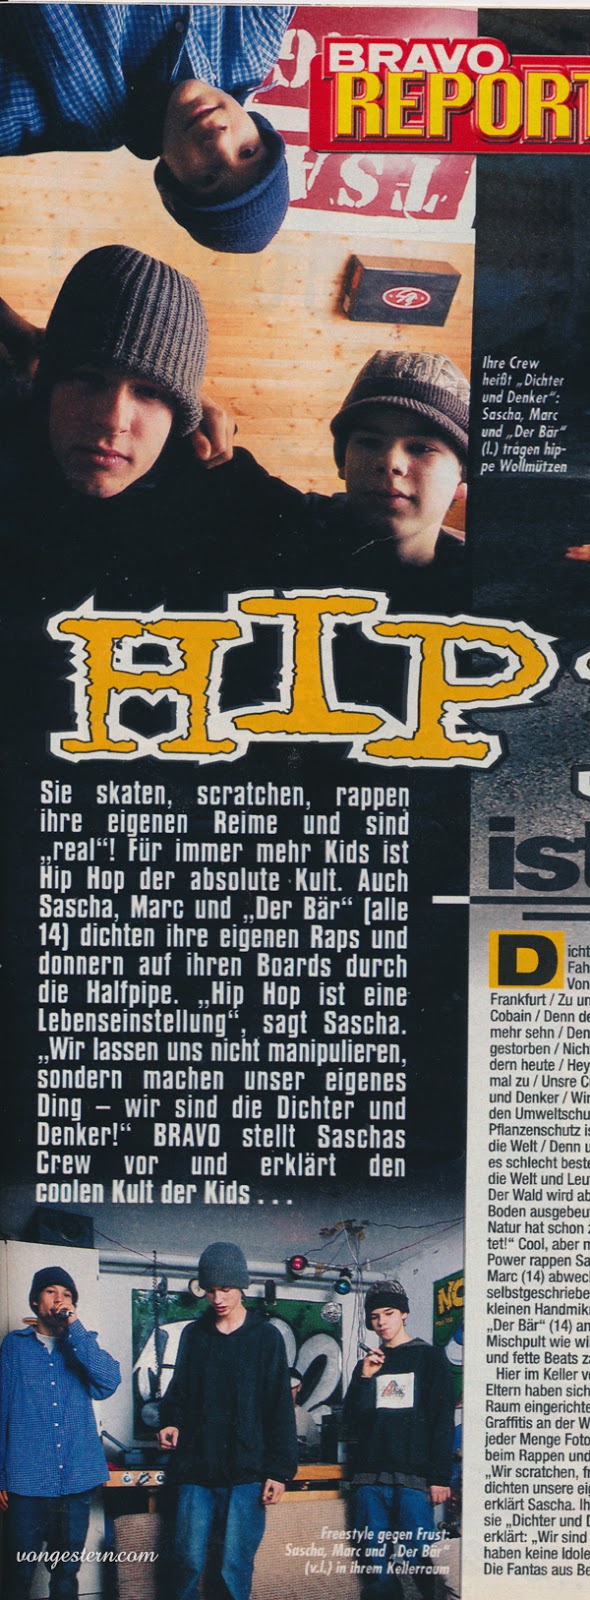 Welt-Hip-Hop-Hip-Hop-Hip-Hop-Freaks